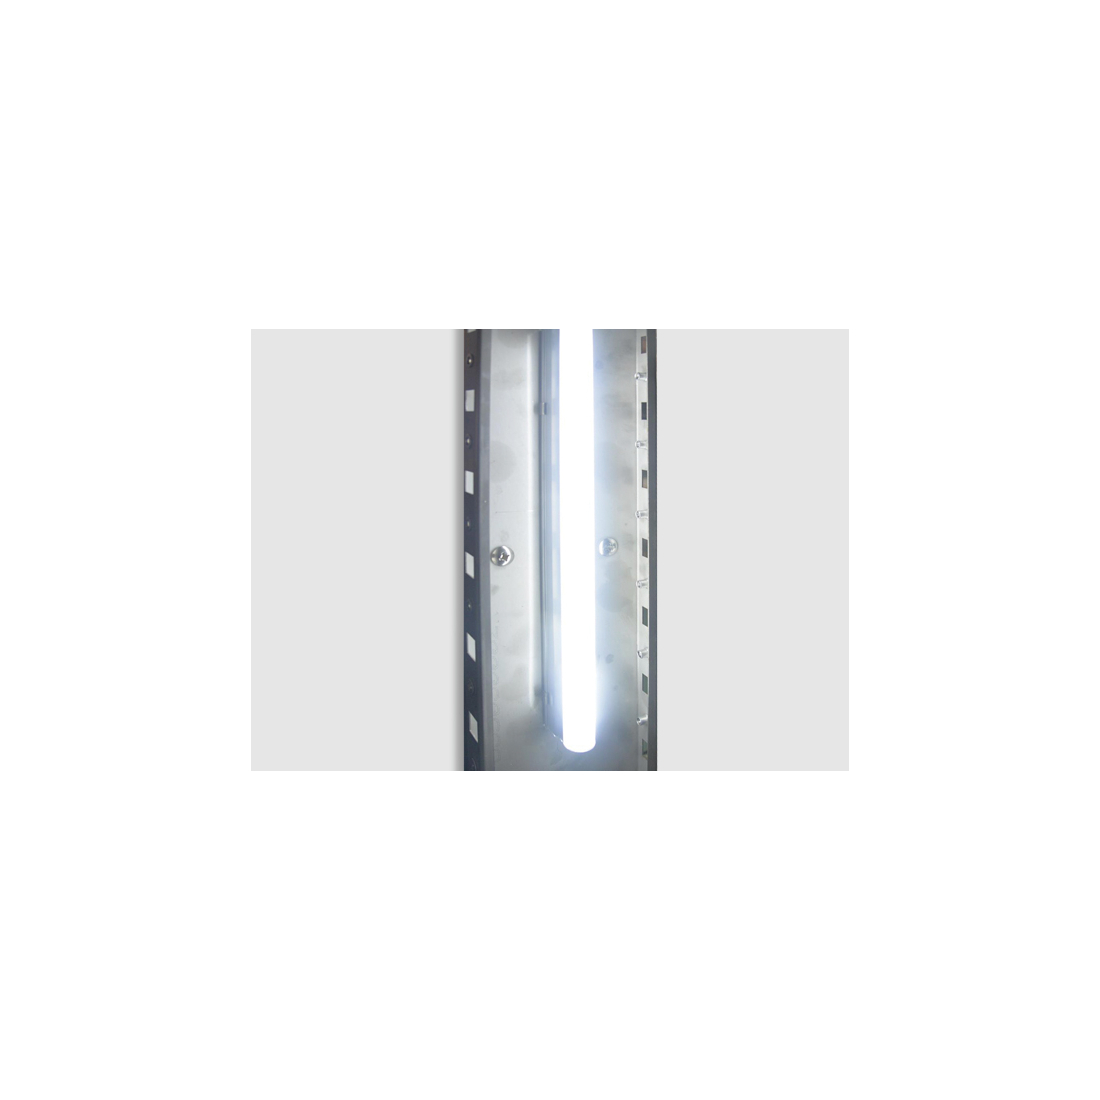 ثلاجة كاونتر بسطح عمل 3 ابواب زجاجية ,QRG3100, من كول هيد|mkayn|مكاين